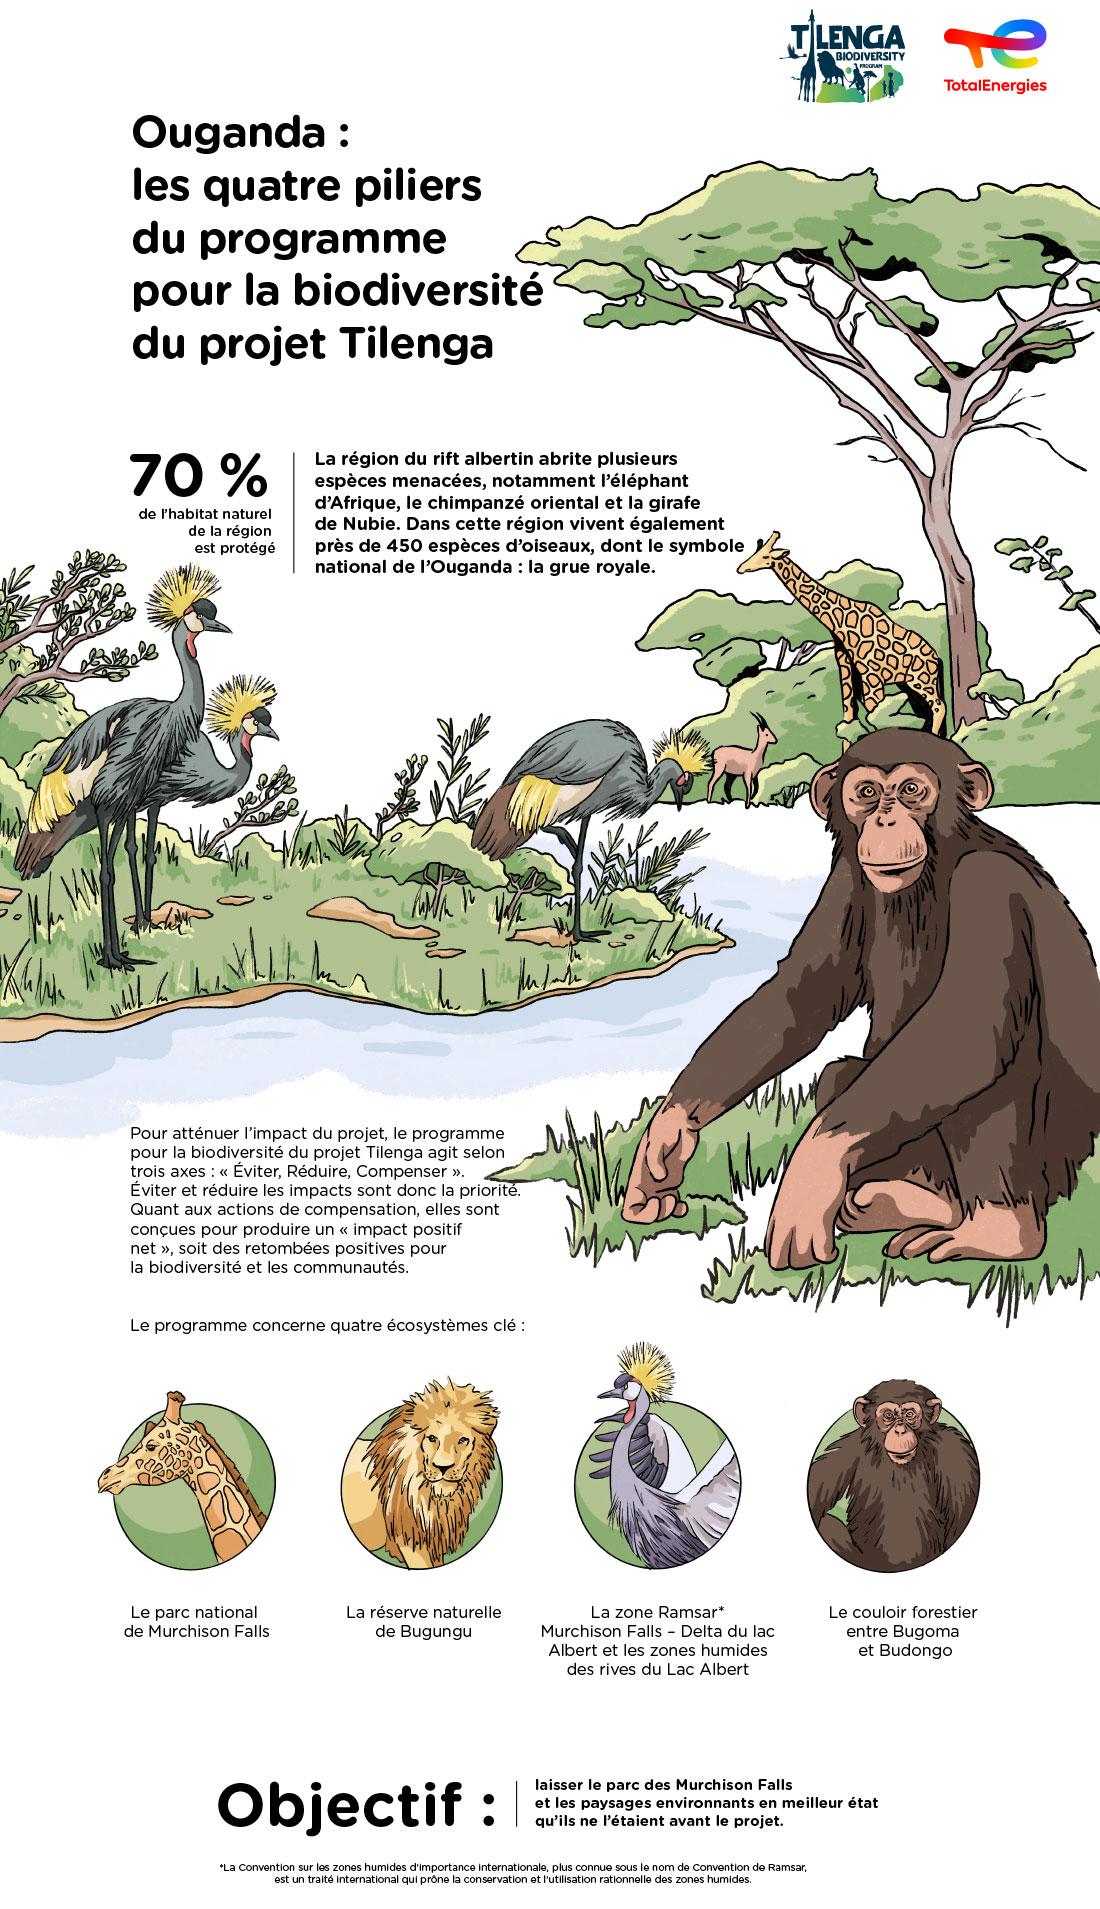 Infographie « Ouganda : les quatre piliers du programme pour la biodiversité du projet Tilenga » - voir description détaillée ci-après